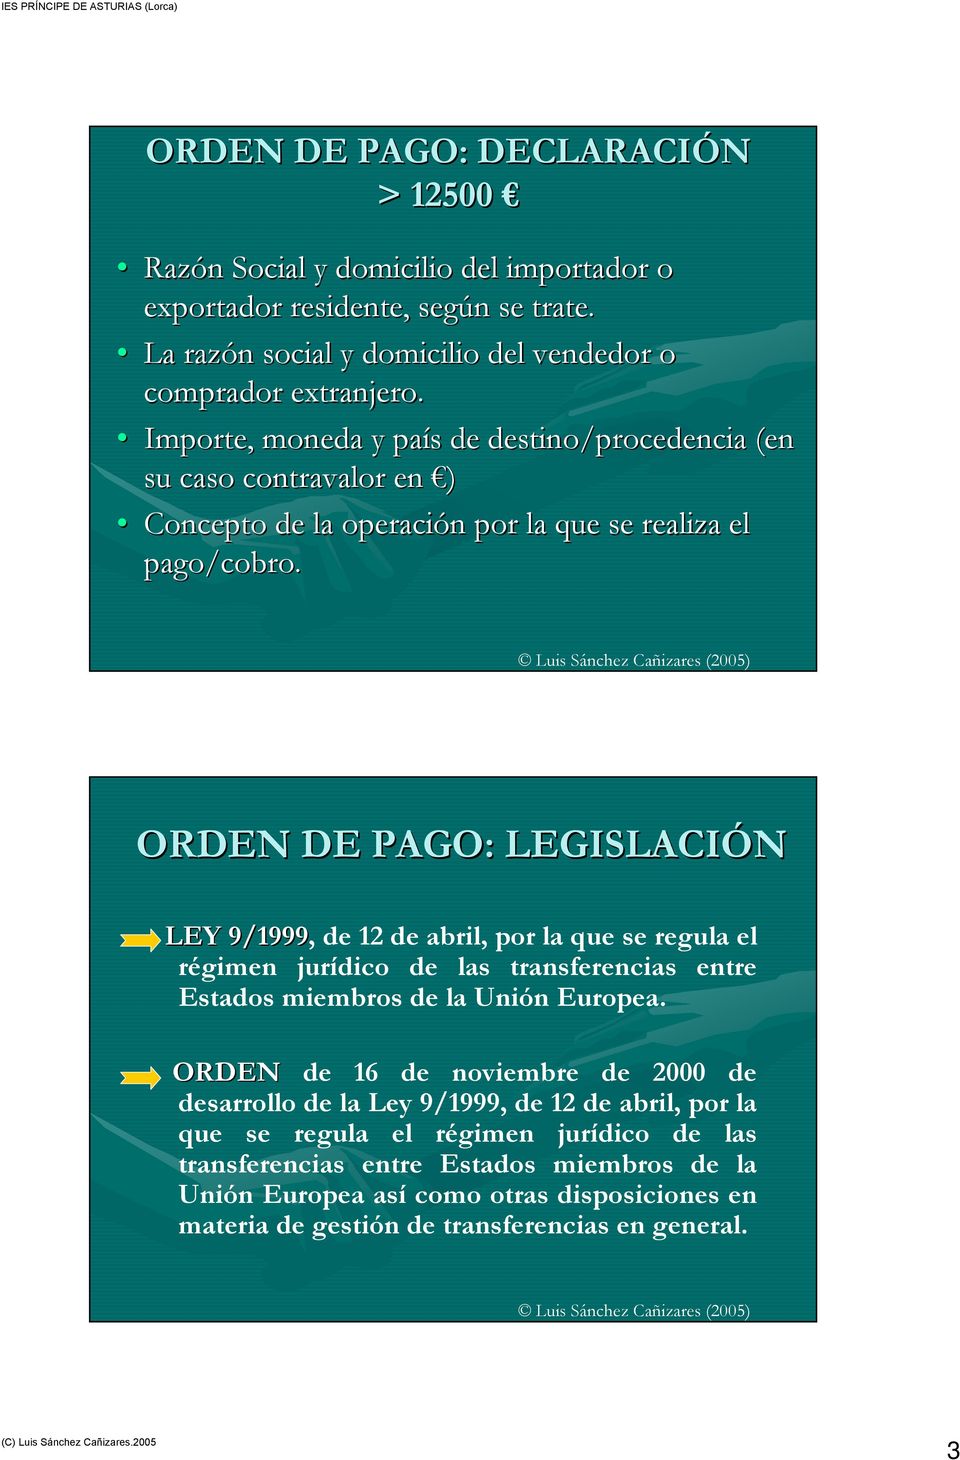 ORDEN DE PAGO: LEGISLACIÓN LEY 9/1999, de 12 de abril, por la que se regula el régimen jurídico de las transferencias entre Estados miembros de la Unión Europea.